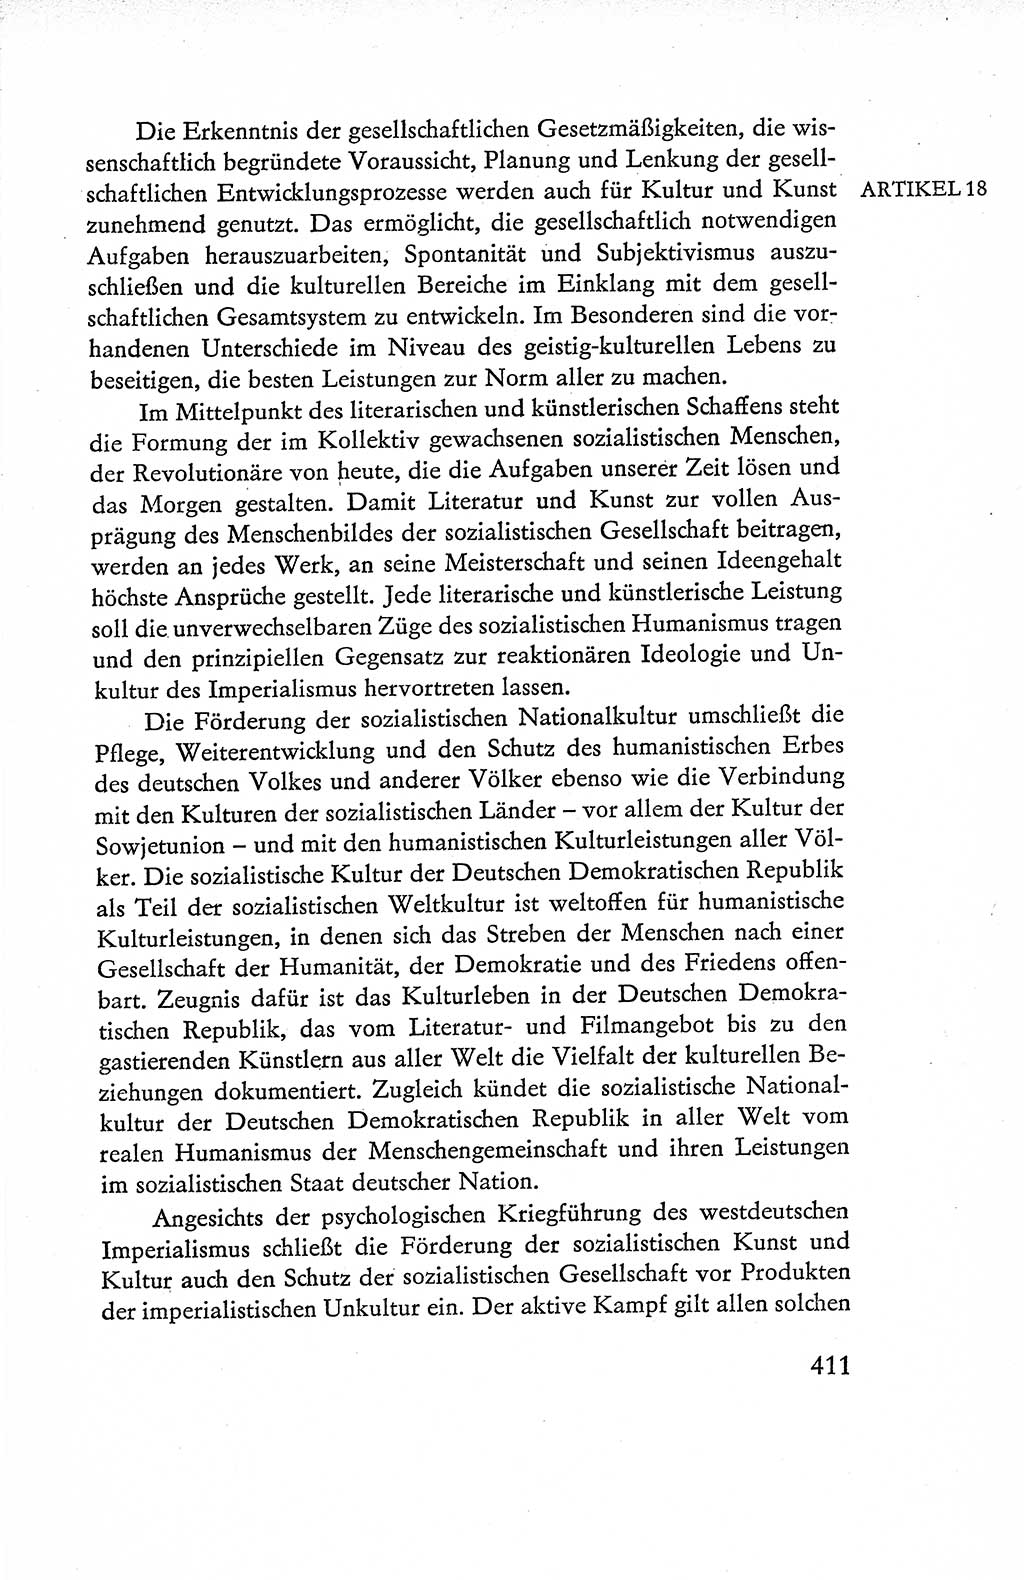 Verfassung der Deutschen Demokratischen Republik (DDR), Dokumente, Kommentar 1969, Band 1, Seite 411 (Verf. DDR Dok. Komm. 1969, Bd. 1, S. 411)